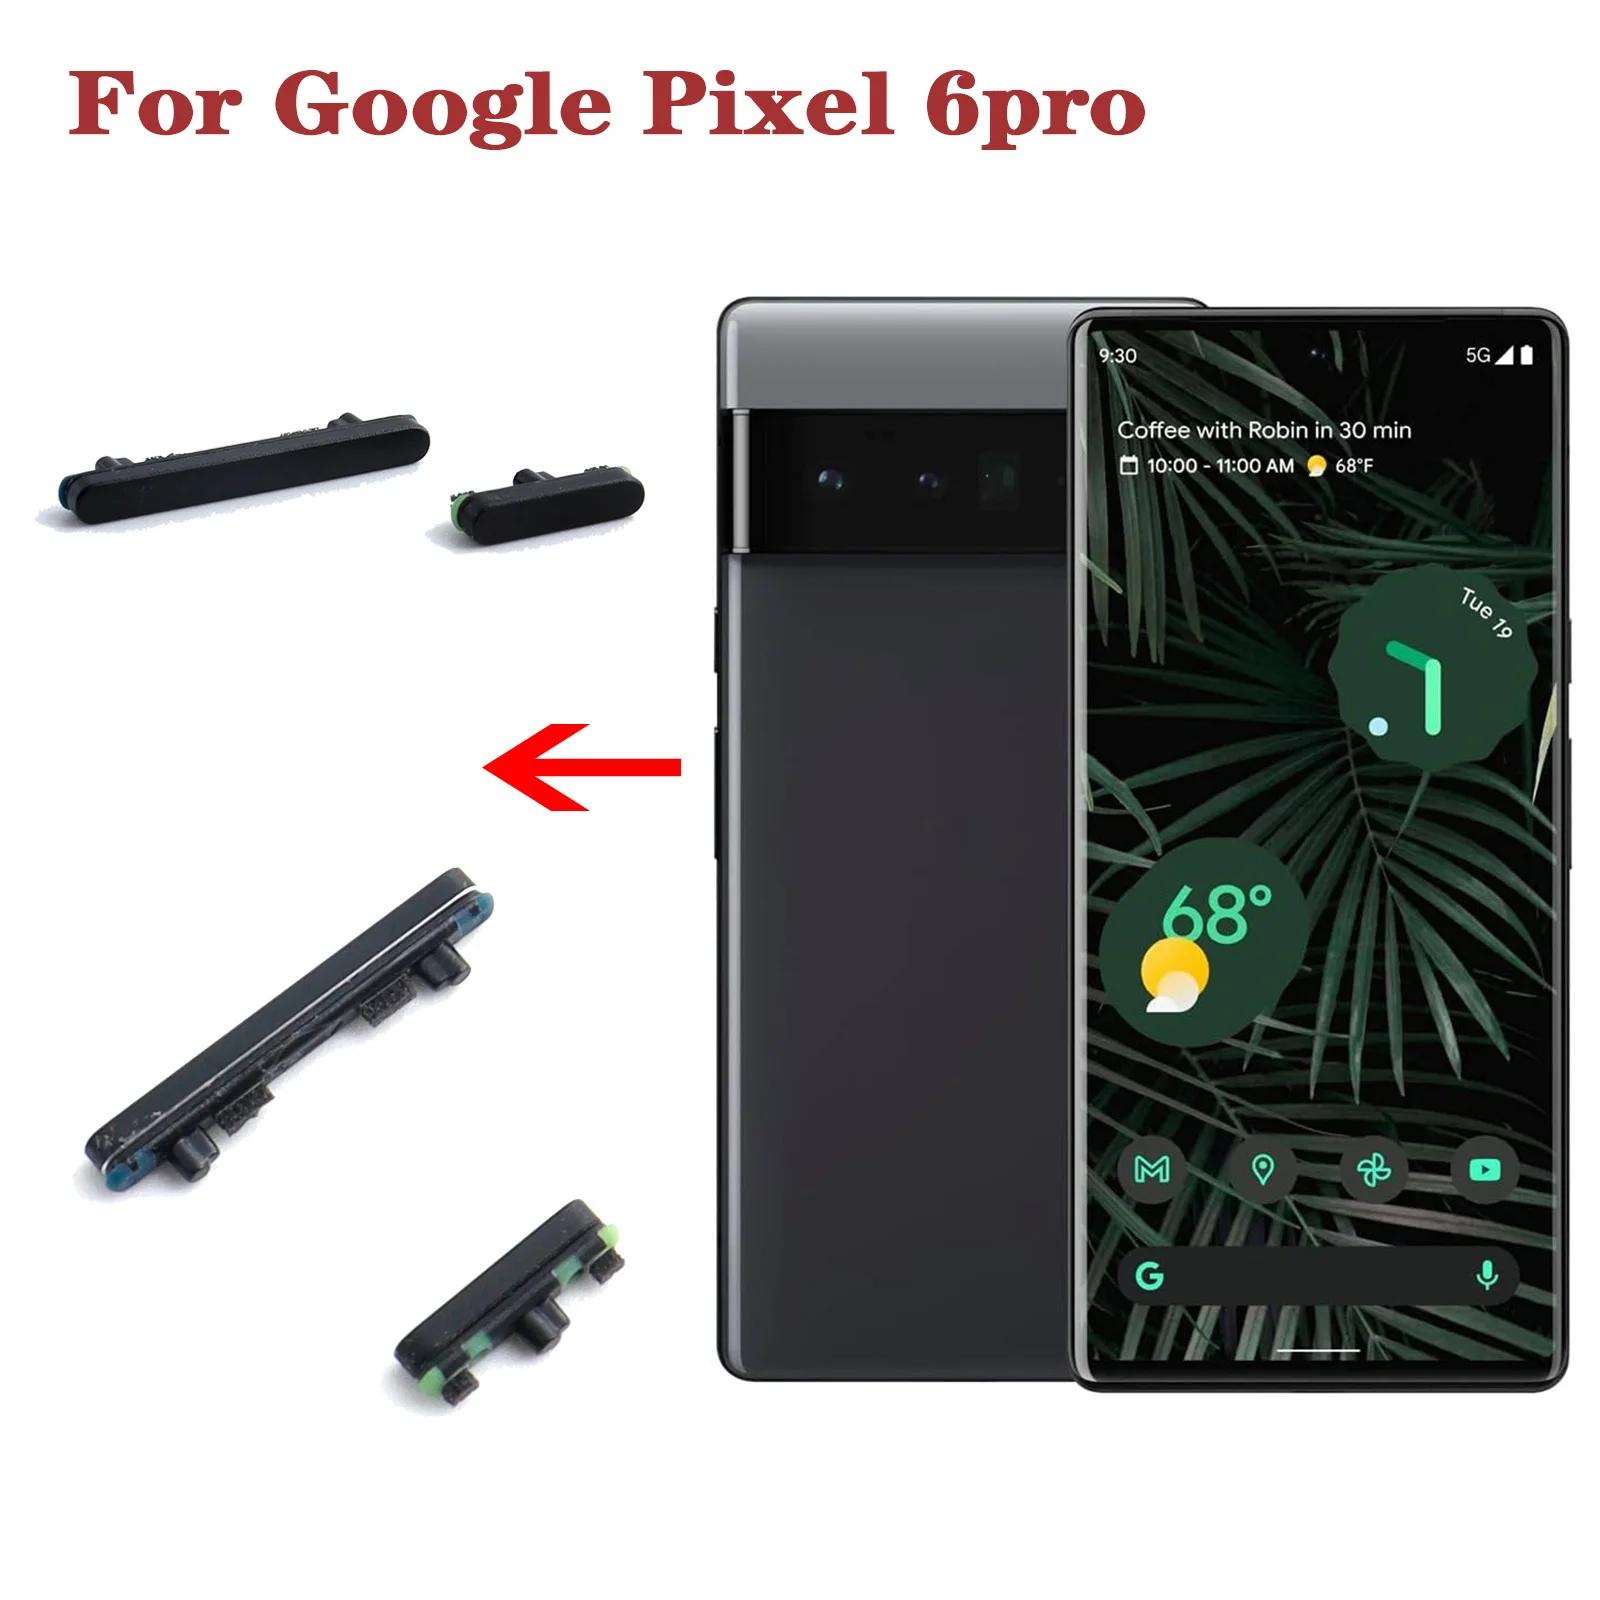  ̵  Ű   ư ü ǰ, Google Pixel 6 Pro Pro  ư